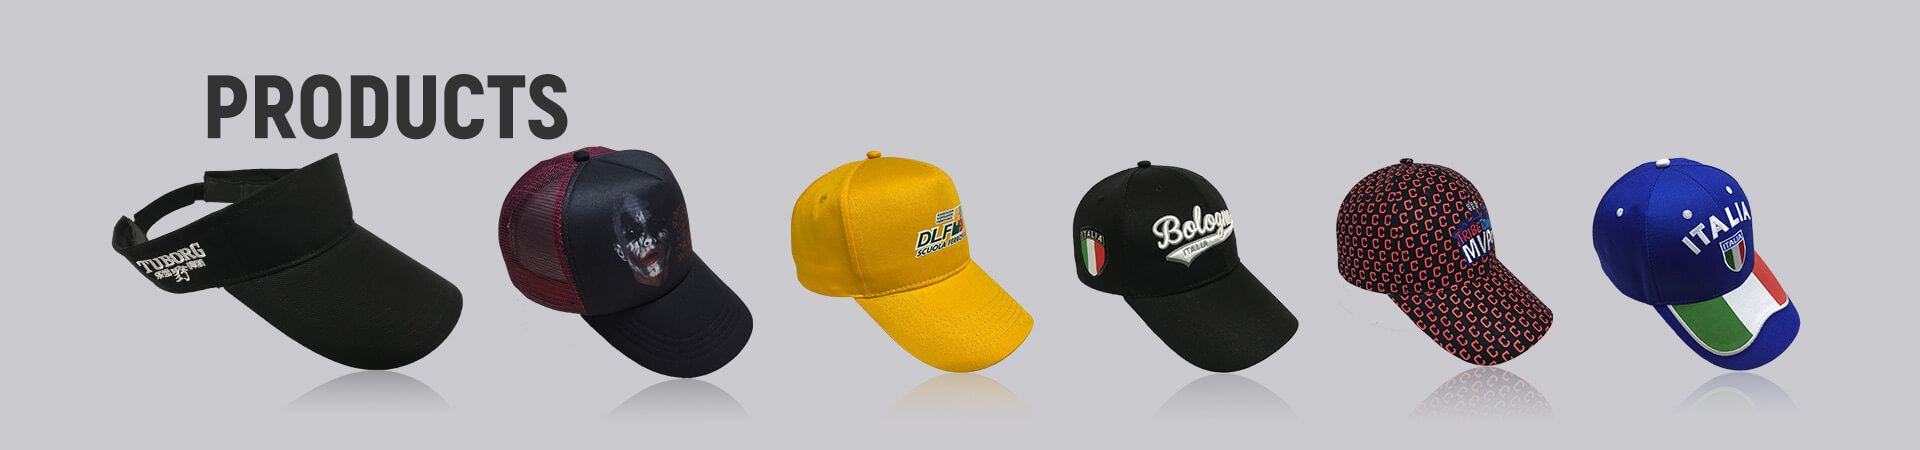 Des produits Archives - Casquette de baseball, casquette de sport, casquette de golf, chapeau de seau, chapeau de pêcheur, chapeau de camionneur